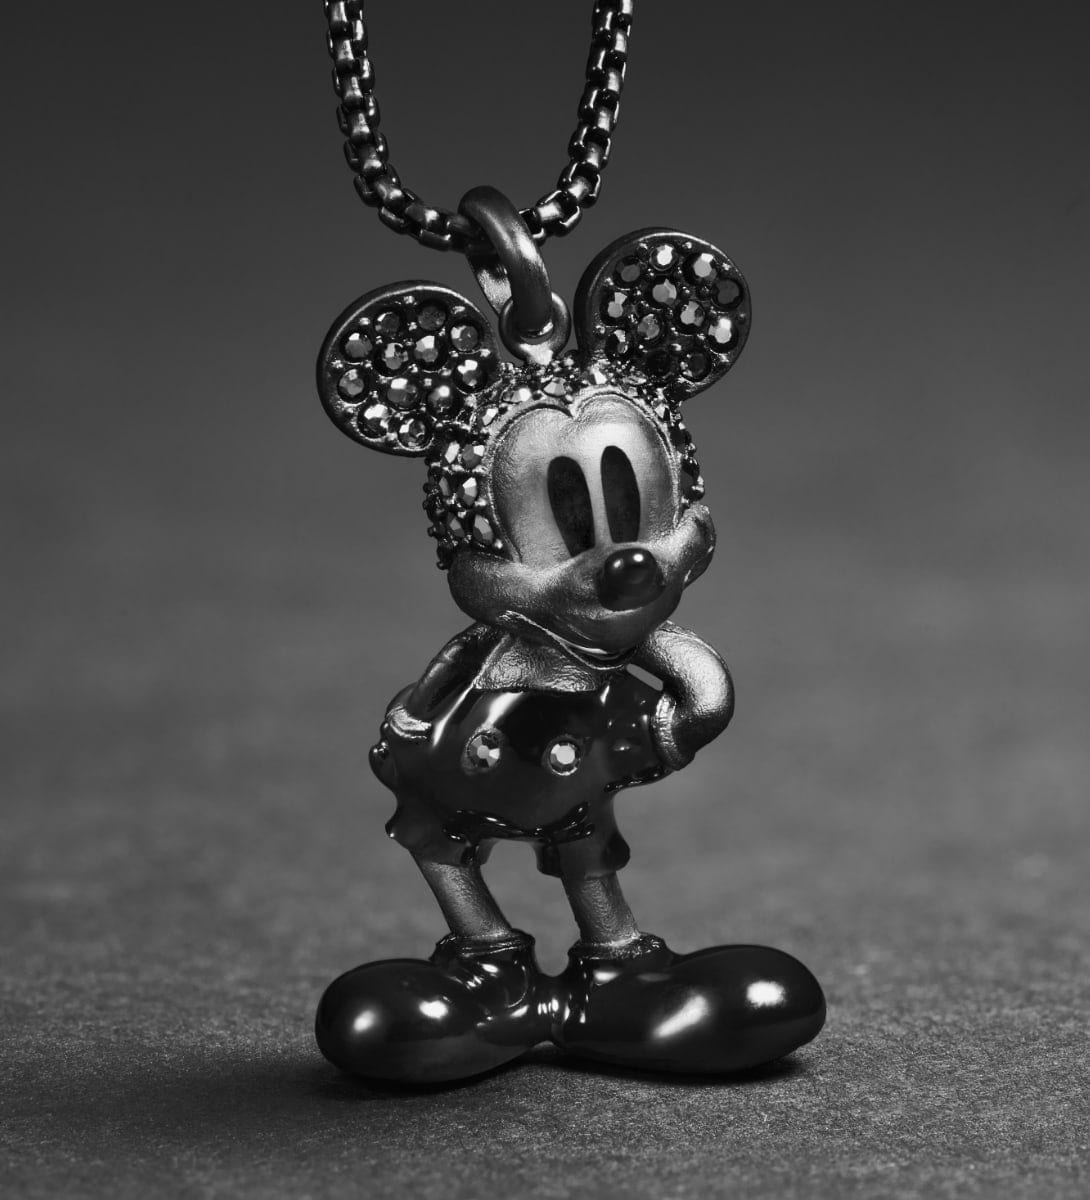 GIF animado de dos imágenes. La primera imagen muestra un collar negro con colgante con la figura de Mickey Mouse, con incrustaciones de cristales negros de hematita. La segunda imagen muestra un colgante en tono dorado del perfil de Minnie Mouse, resaltado con cristales.